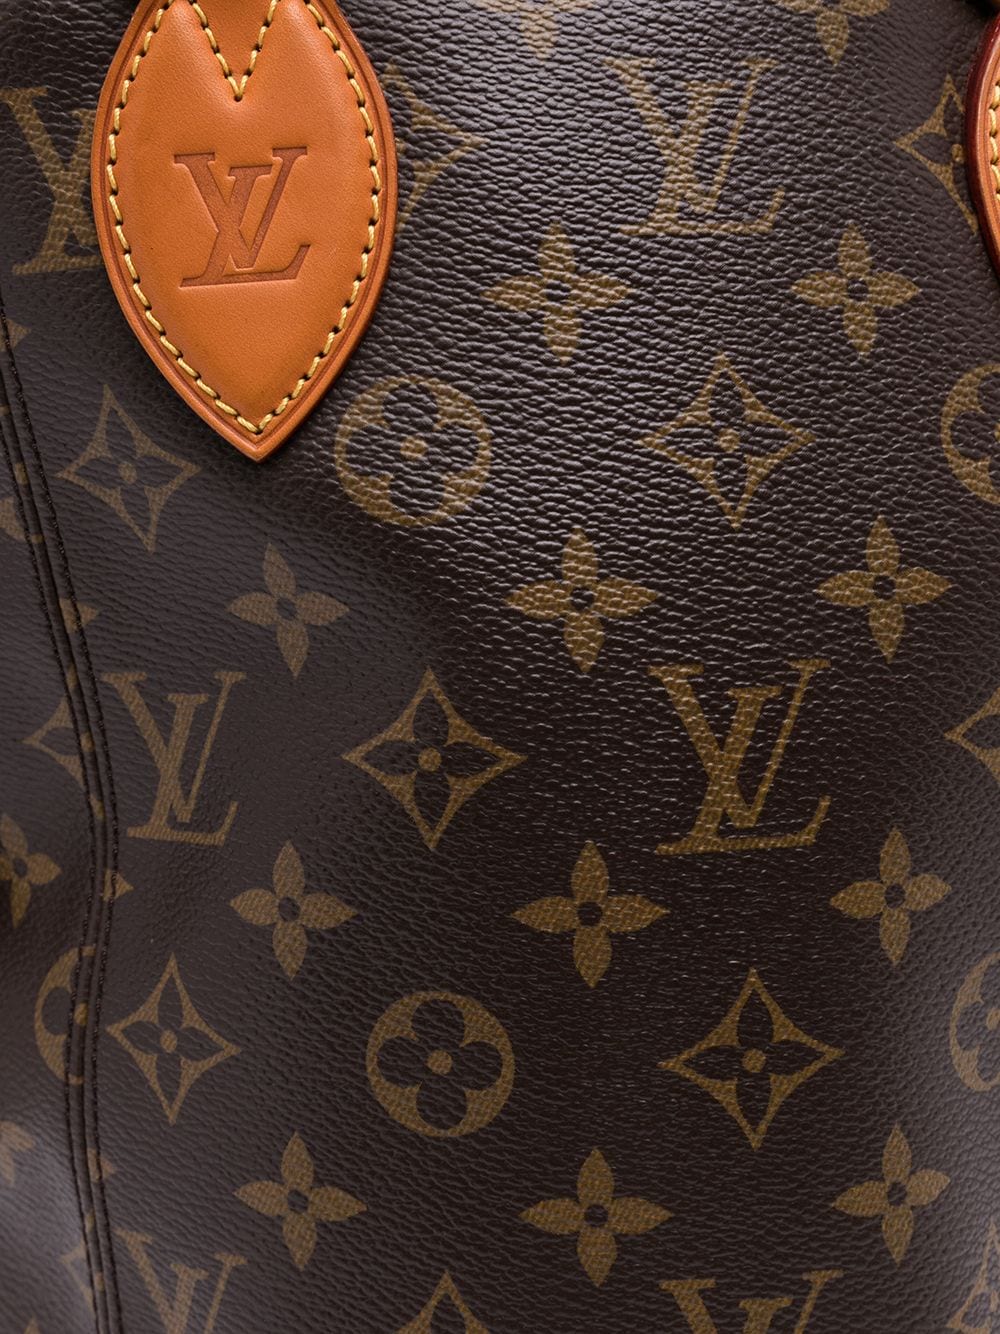 Buy Louis Vuitton Punching Bag Monogram Canvas Baby Brown 2378202